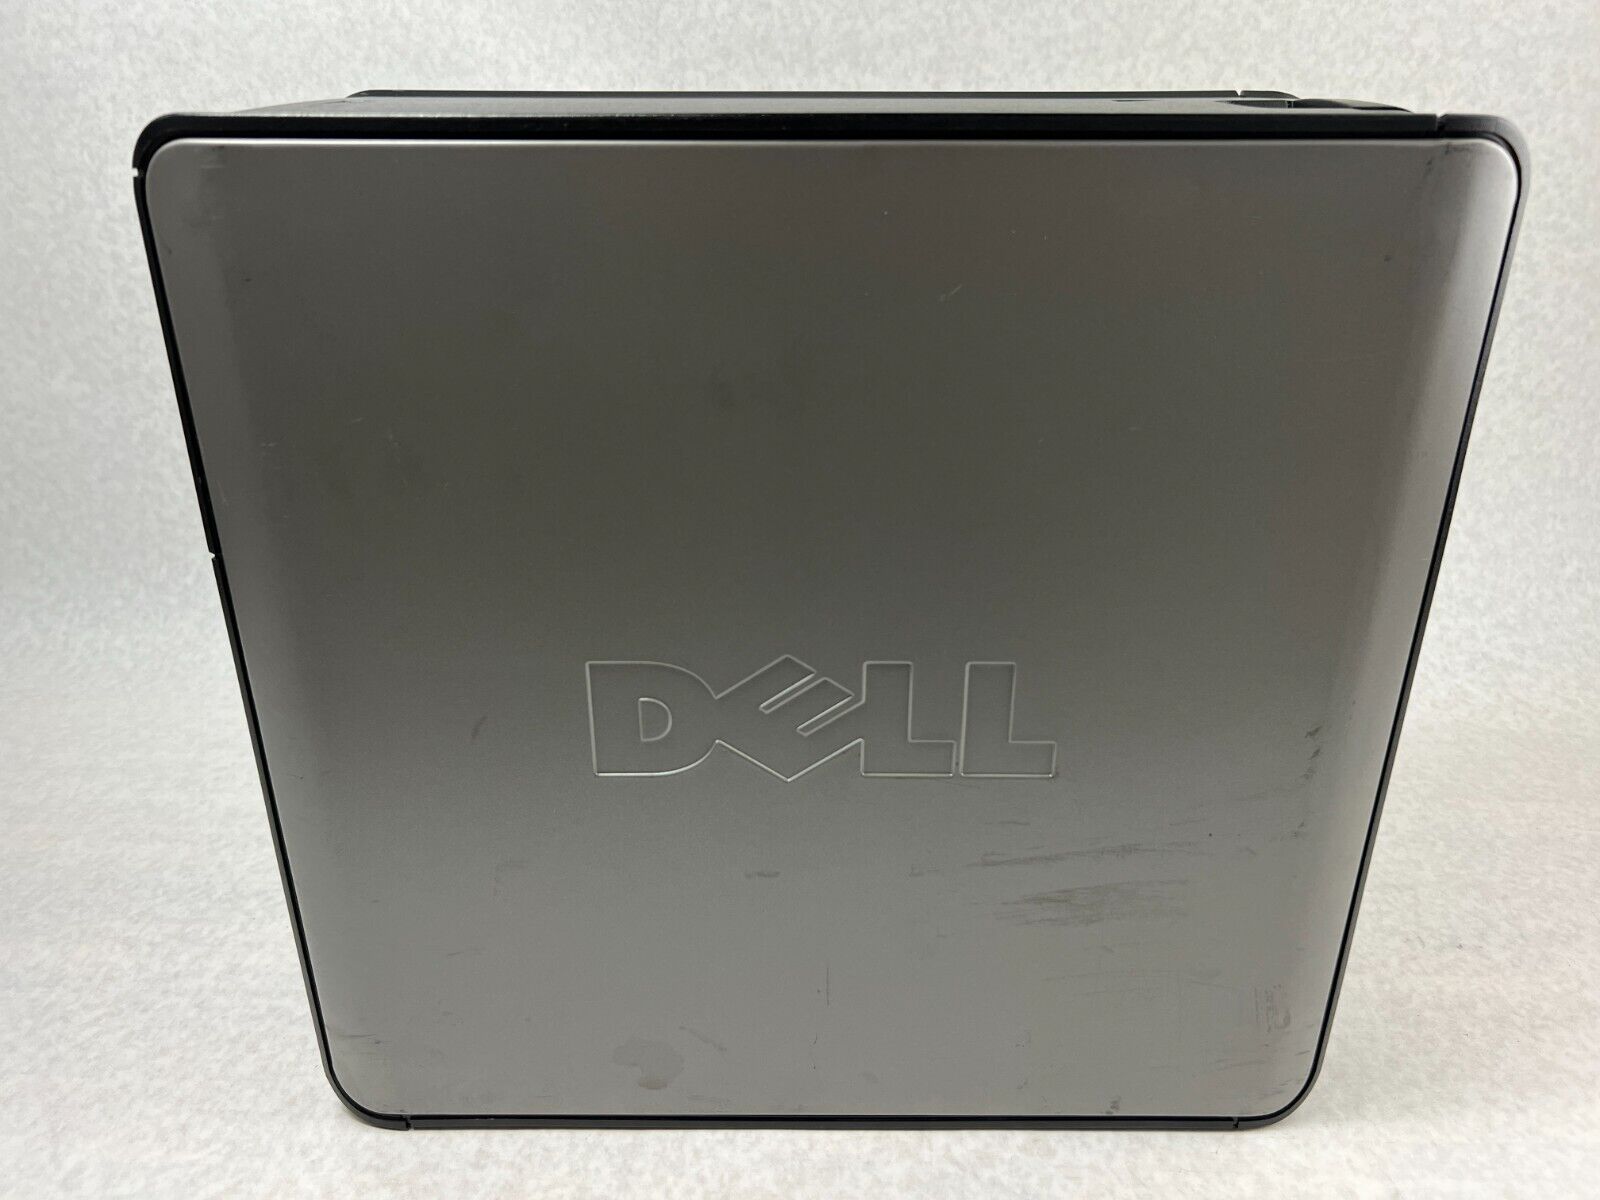 Dell OptiPlex 755 MT Intel Pentium Dual-E2160 1.80GHz 2GB RAM No HDD No OS